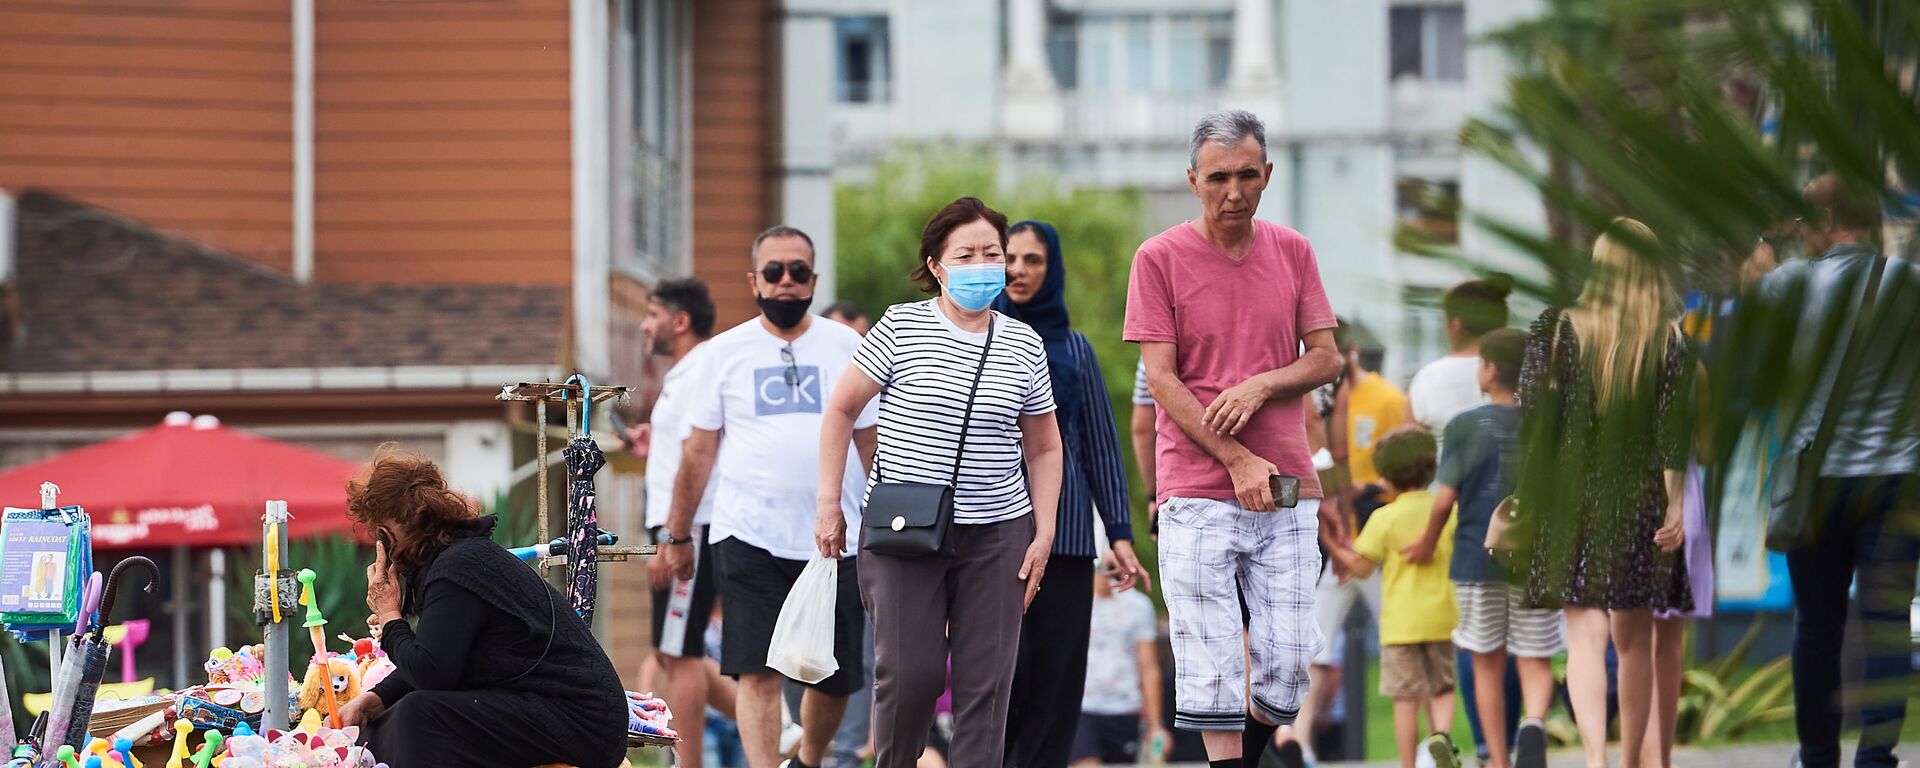 Эпидемия коронавируса - по одной из батумских улиц гуляют туристы  - Sputnik Грузия, 1920, 29.08.2021